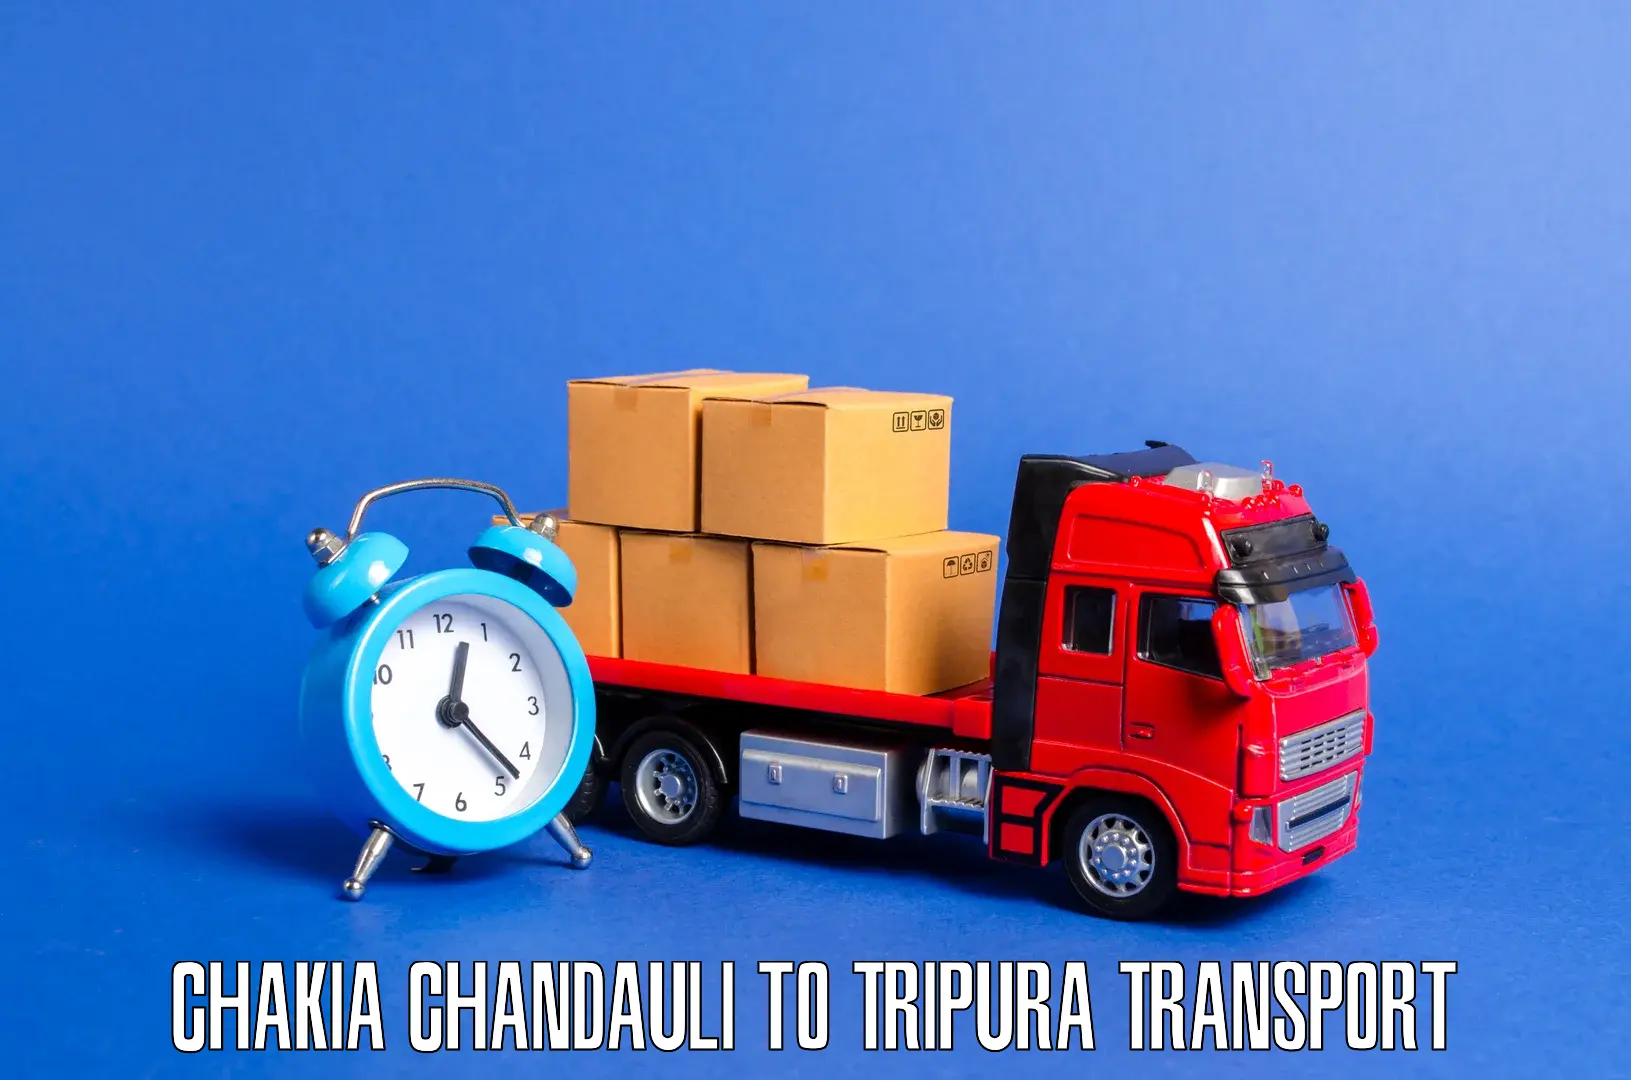 Furniture transport service Chakia Chandauli to Ambassa